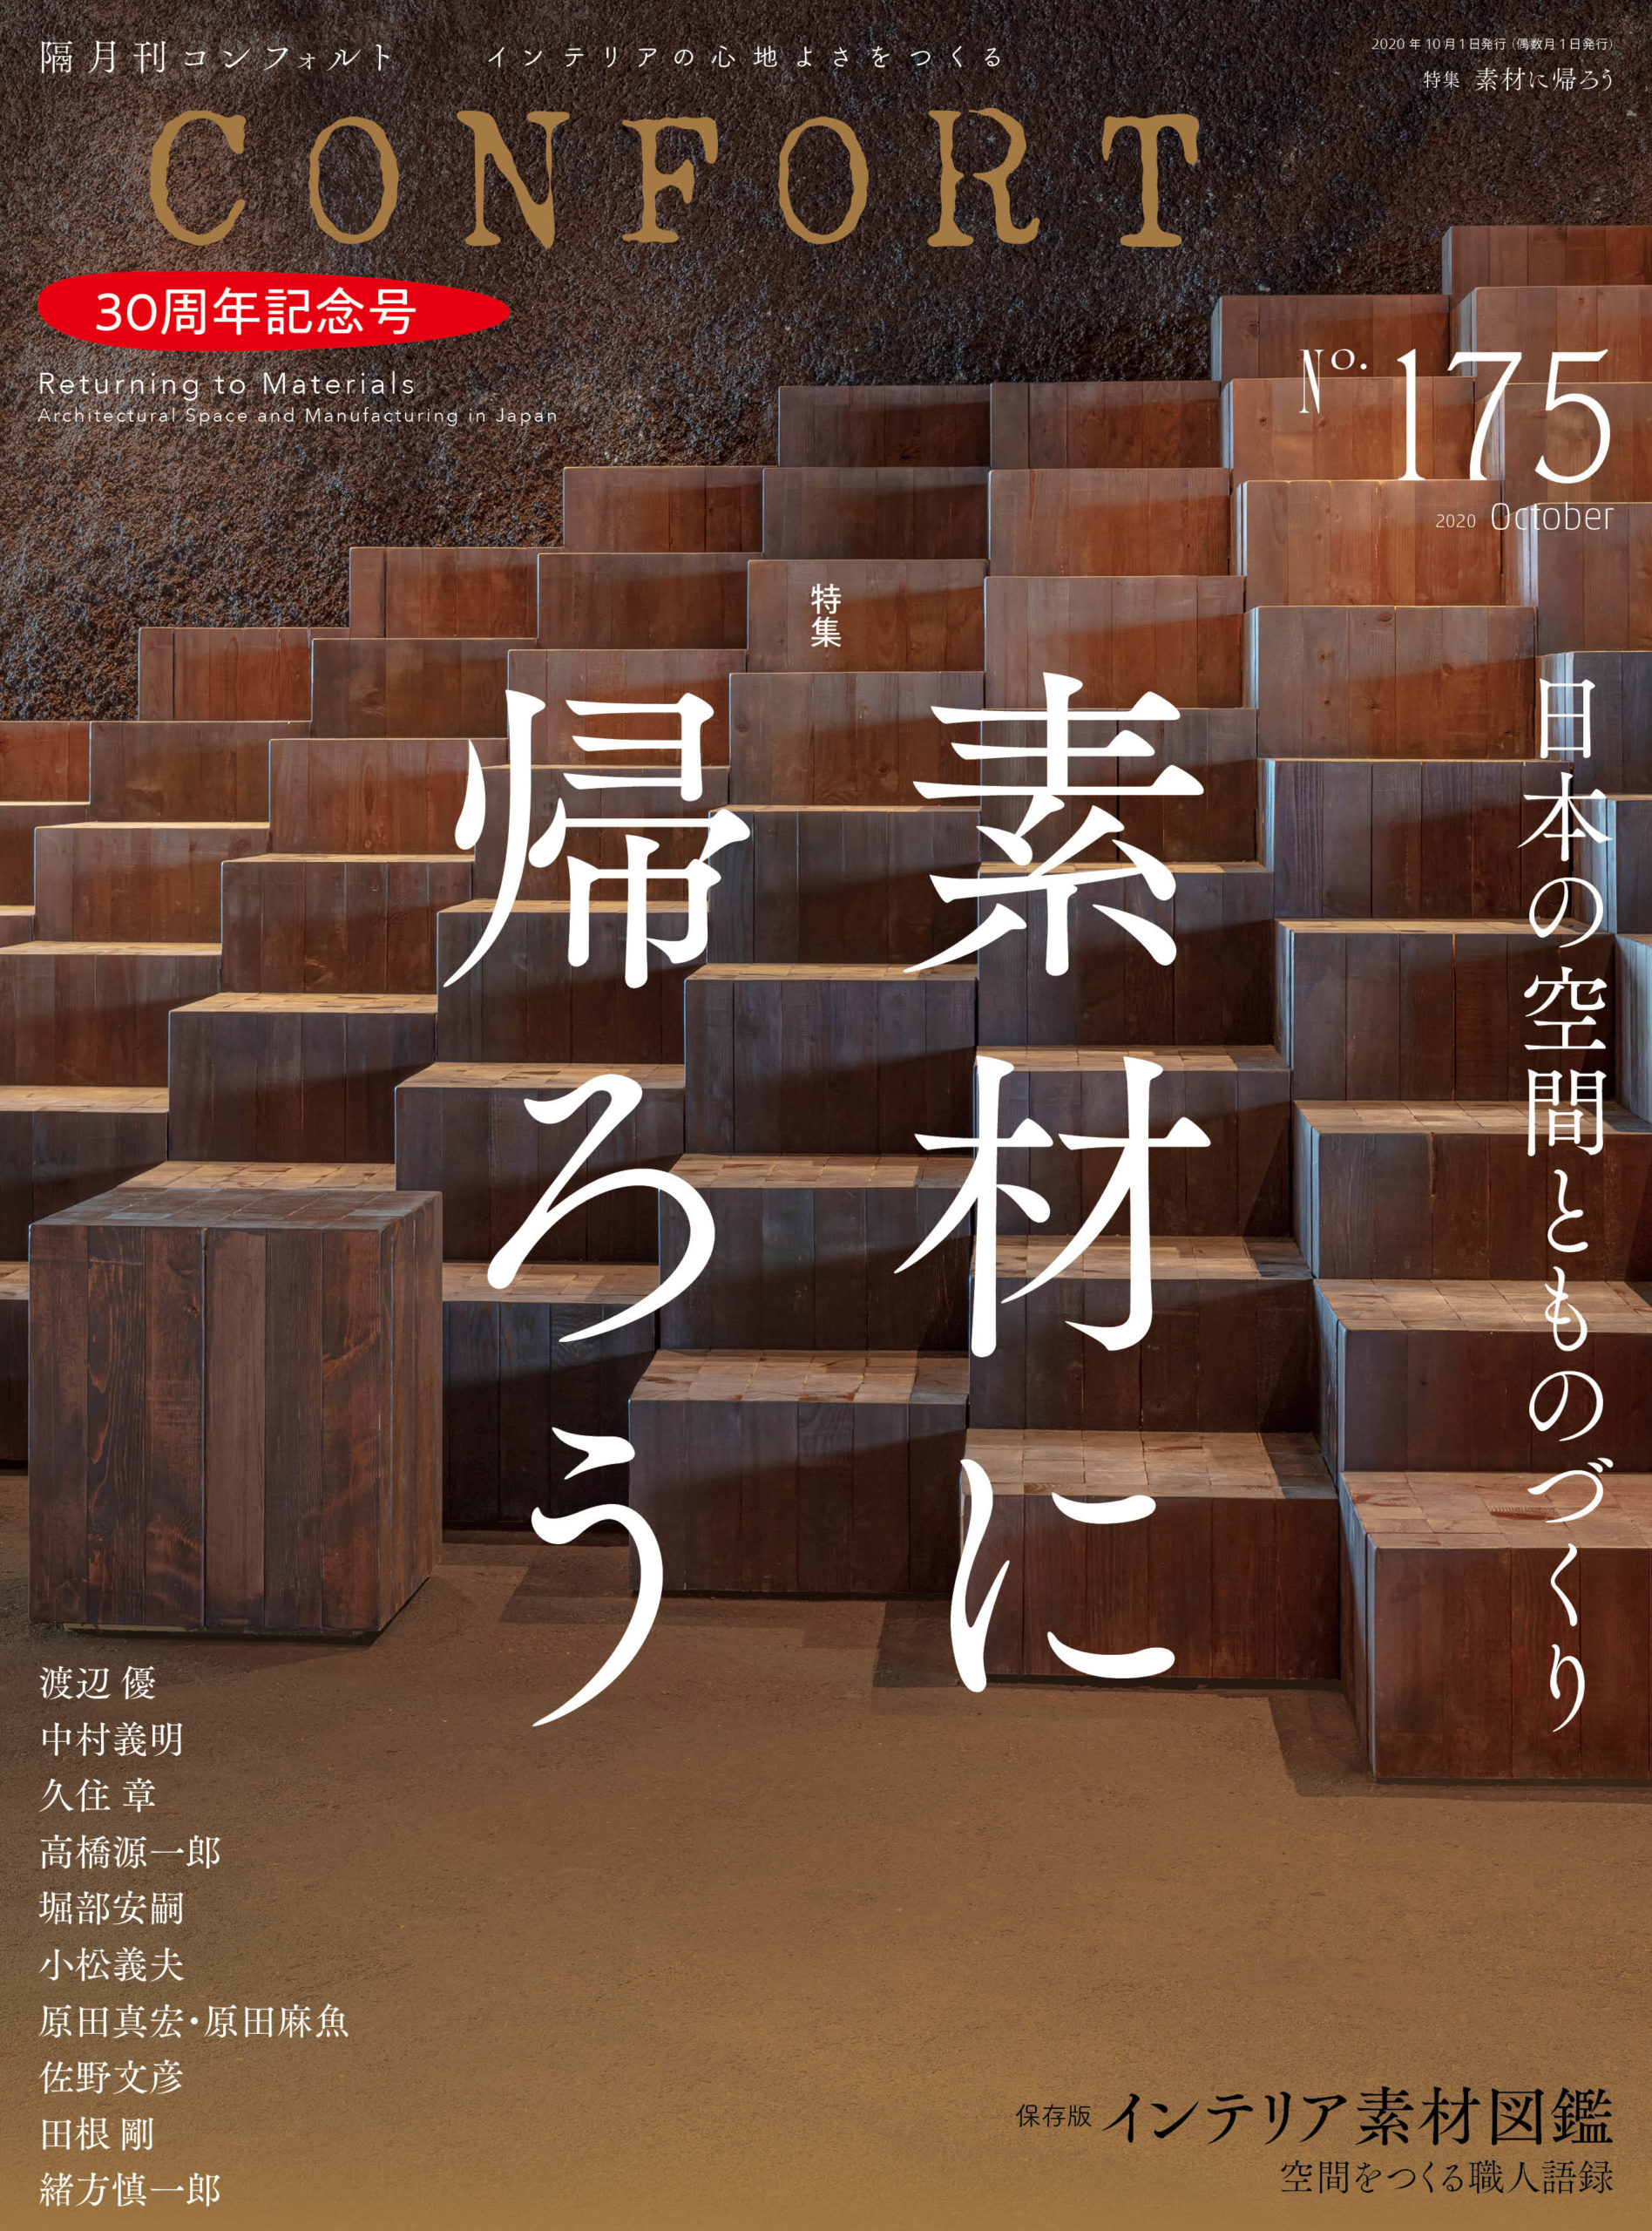 30周年記念号 素材に帰ろう 日本の空間とものづくり 発売 雑誌 コンフォルト Confort